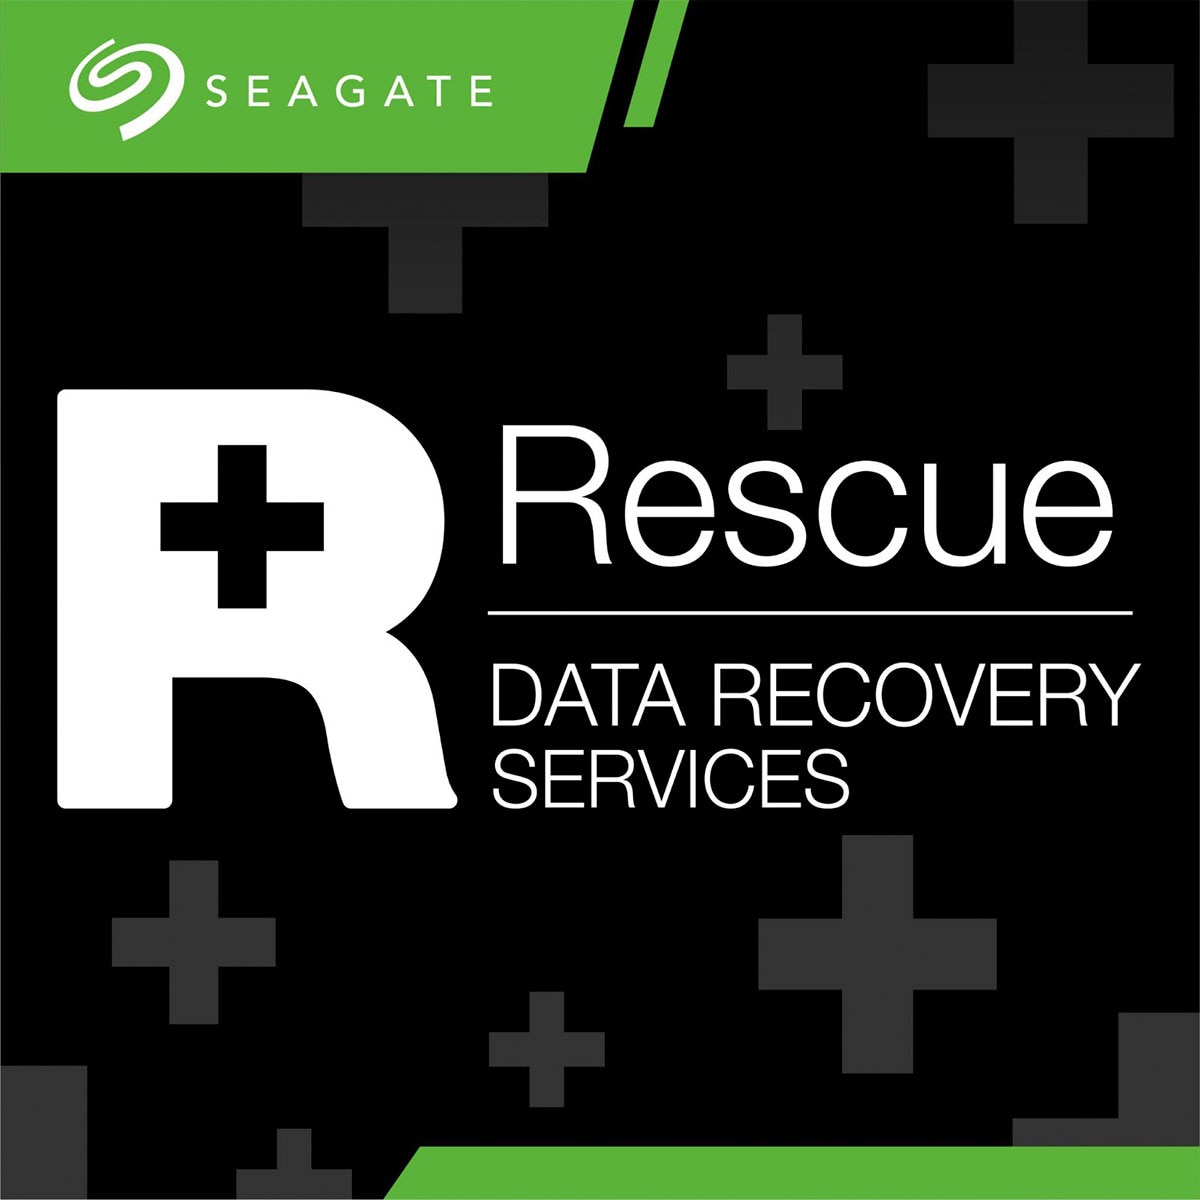 希捷 Seagate Type C隨插即用，瞬間安裝完成，三年保固，供世界級資料救援專家團隊的協助，2年免費資料救援。